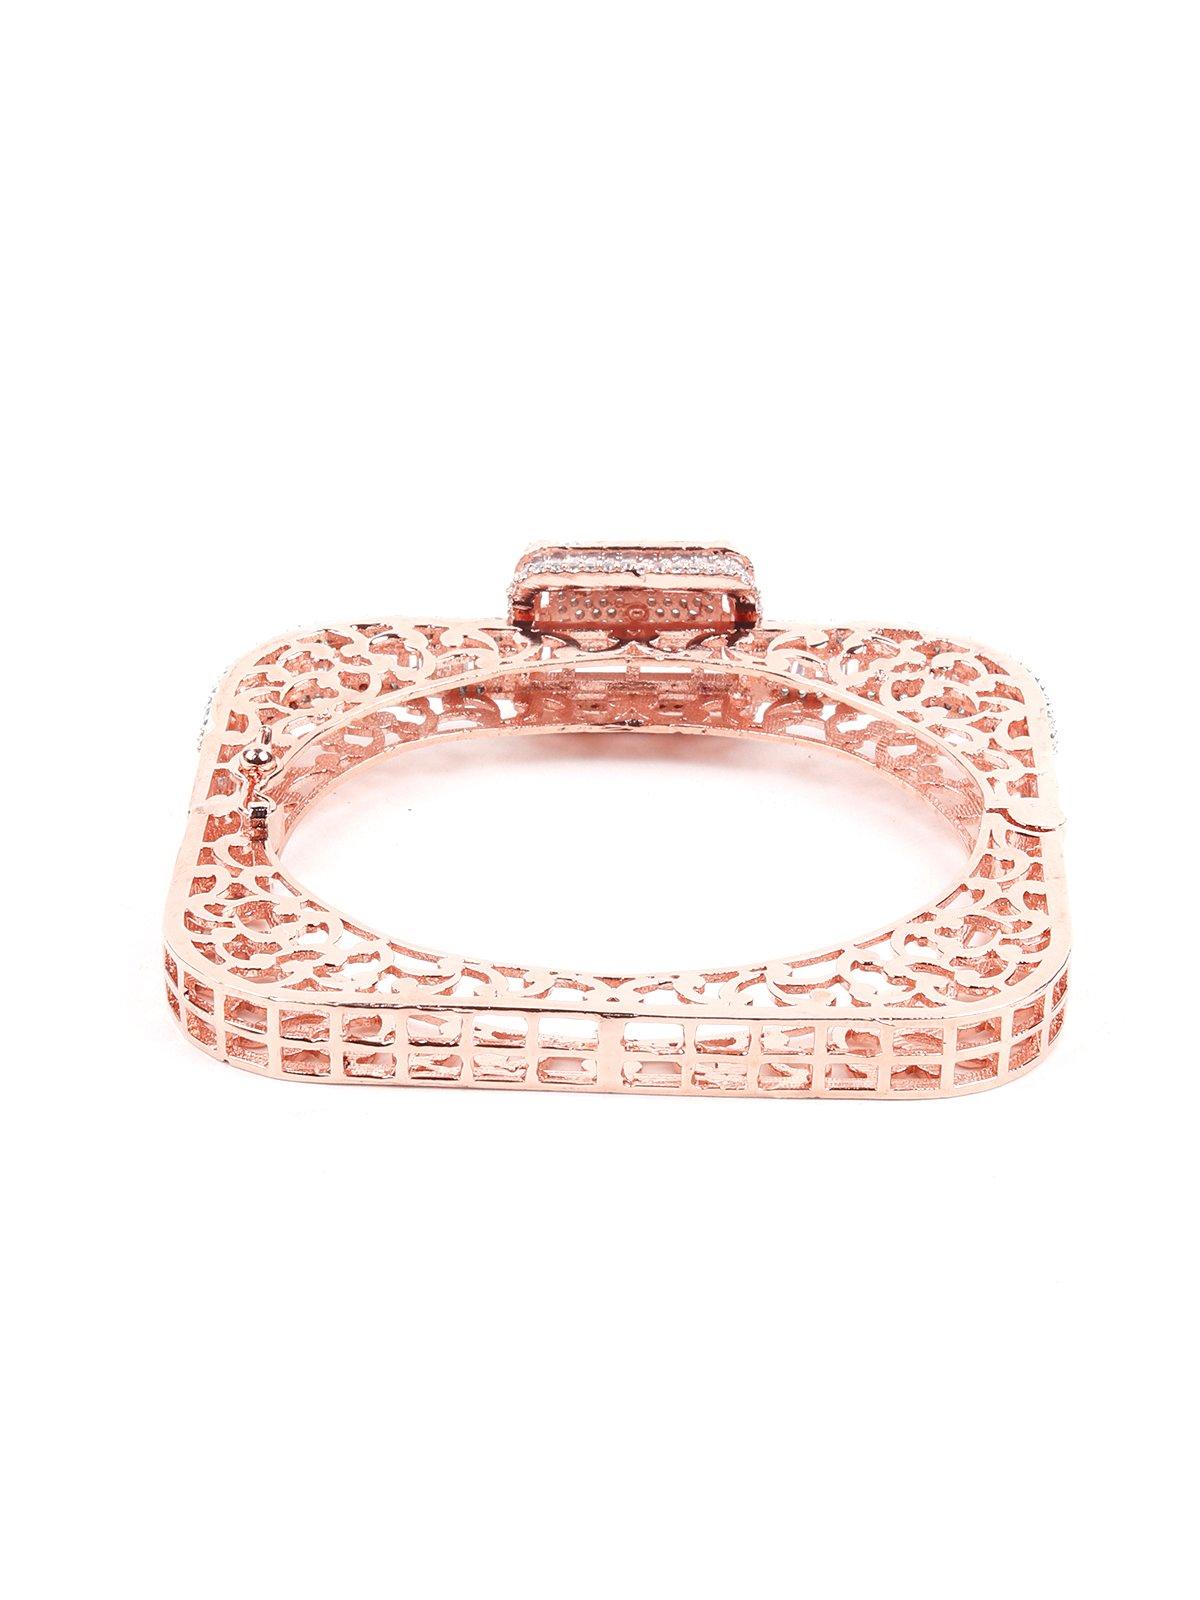 Square Shaped Crystal Embellished Bracelet-Gold-Tone - Odette